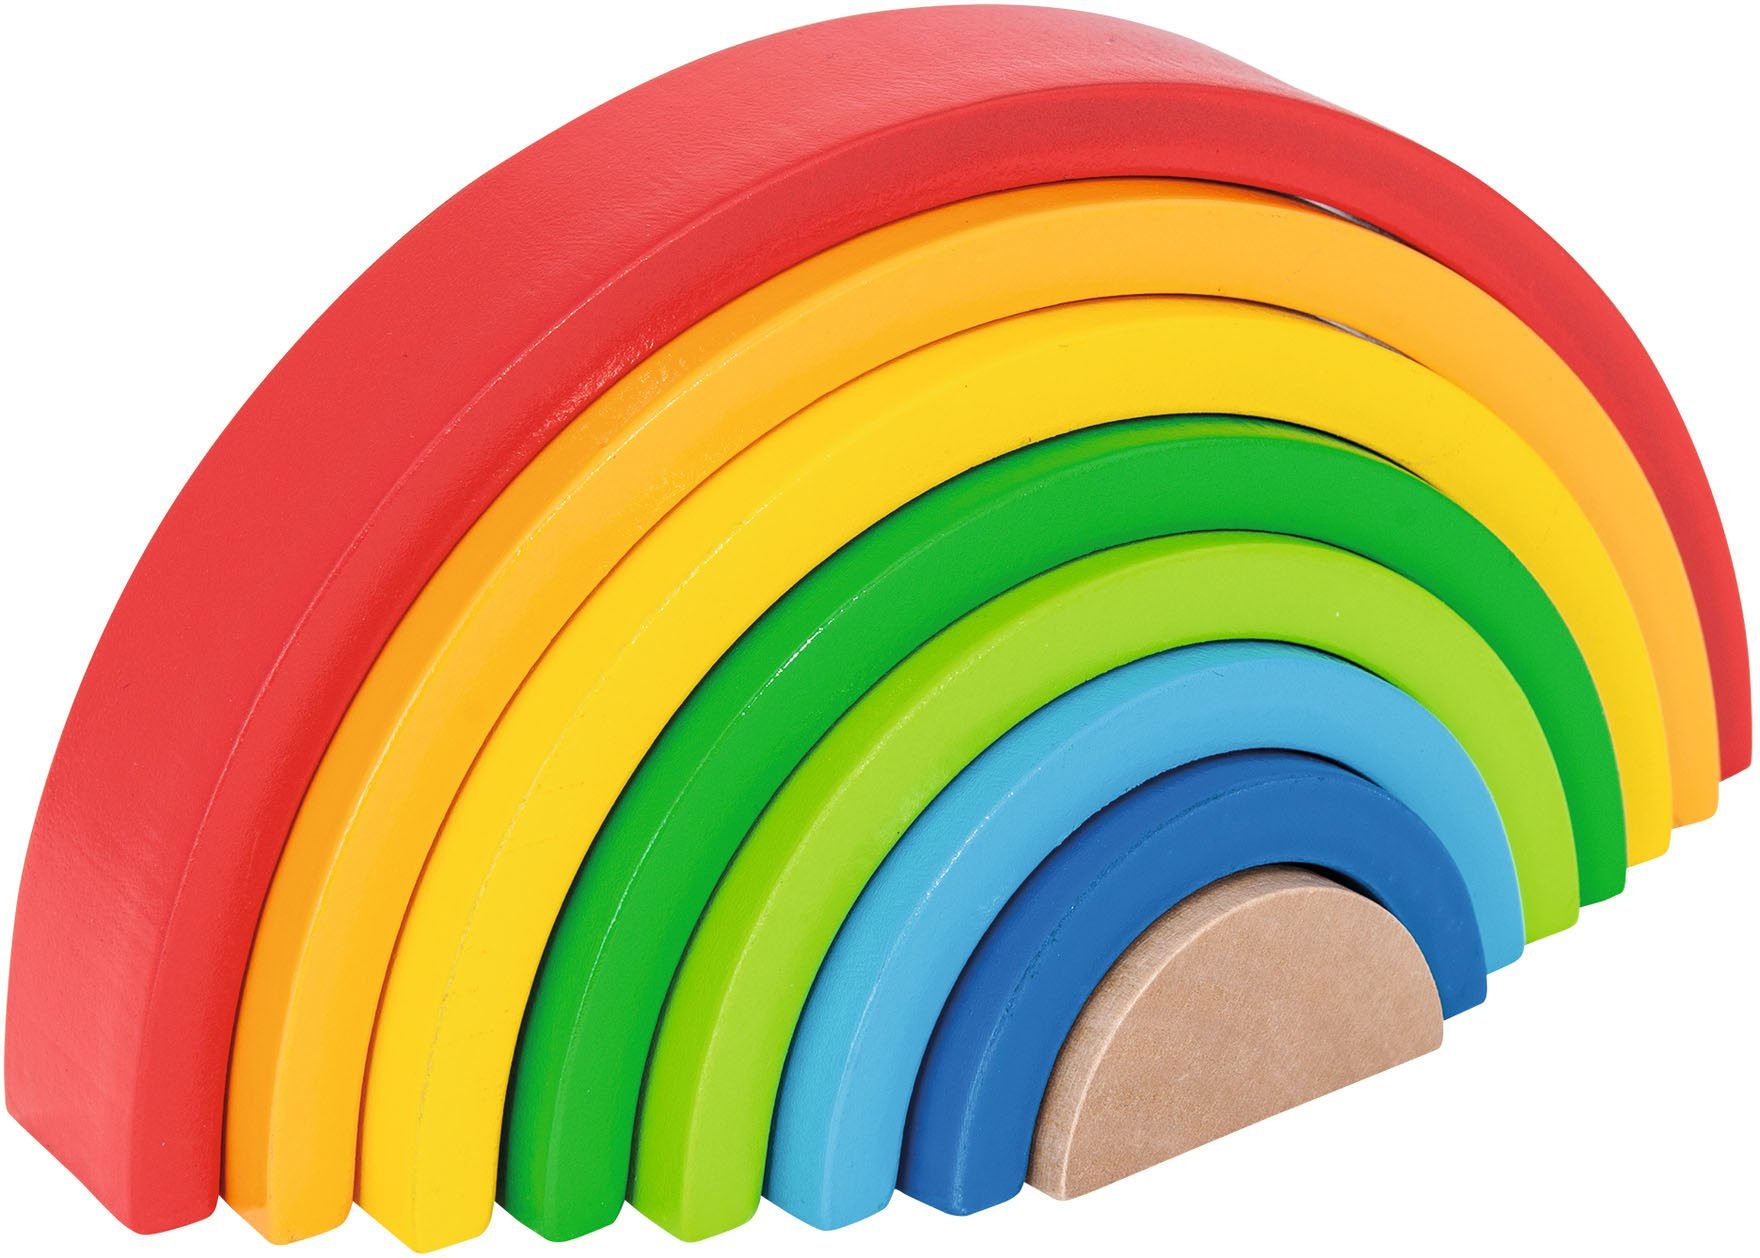 Eichhorn Stapelspielzeug Regenbogen